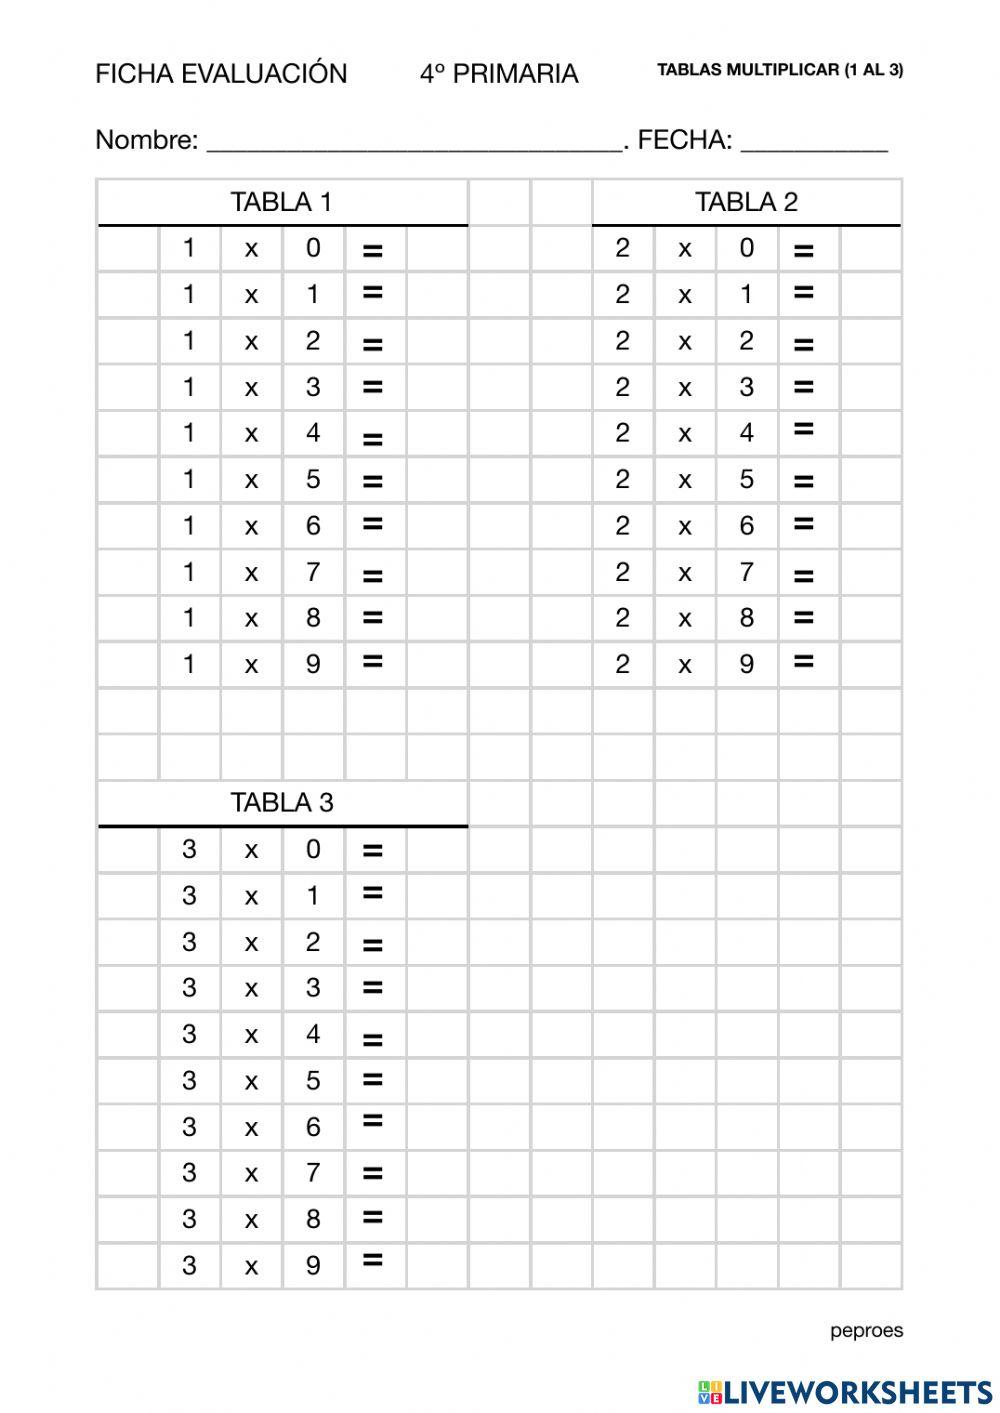 Ficha evaluación tablas multiplicar (1 al 3)